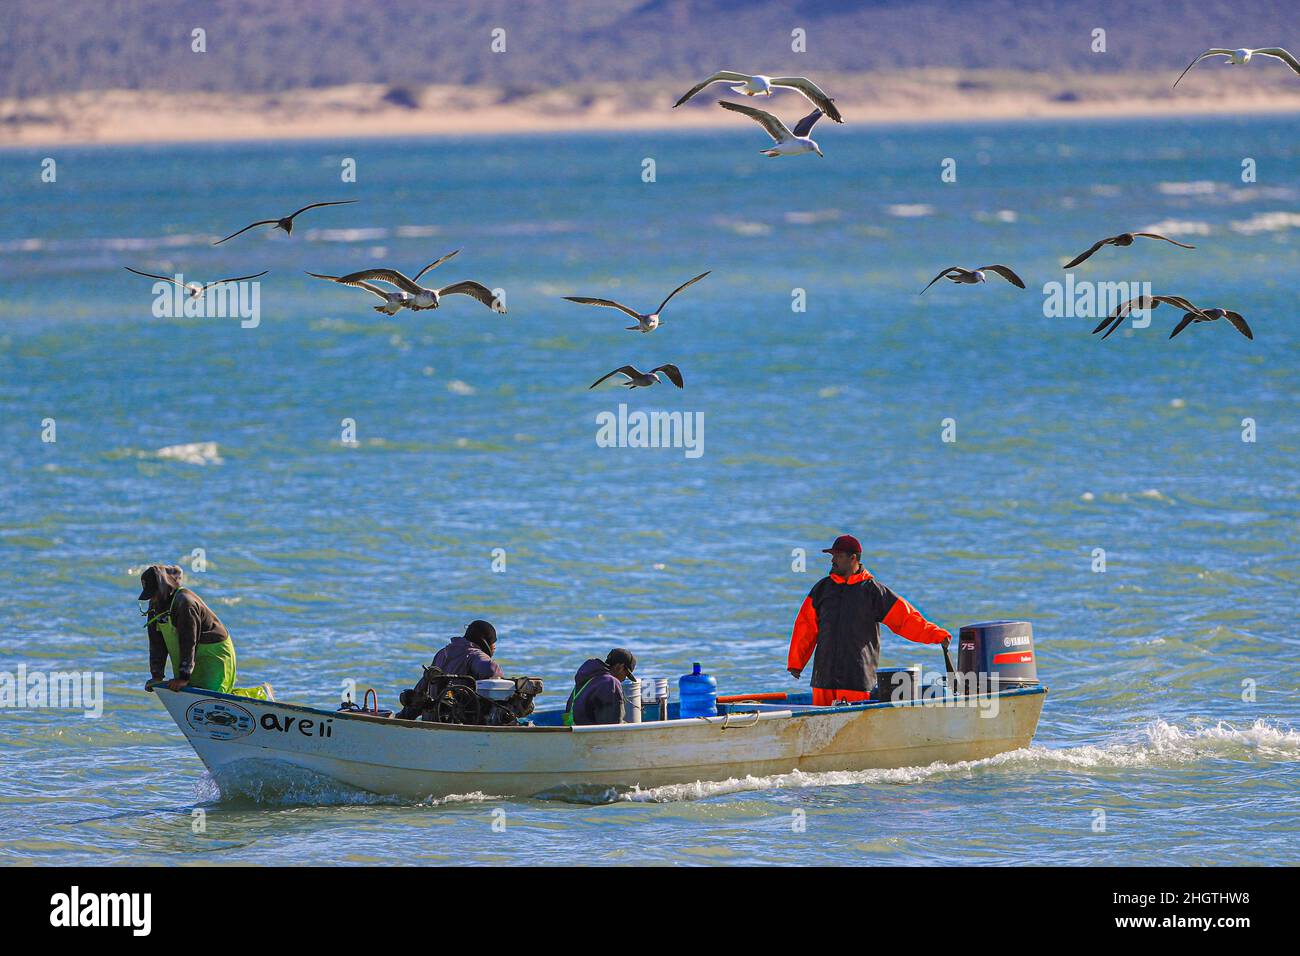 Fishing boat, fisherman's panga in Kino Bay surrounded by seagulls. Sonora Mexico. Bote de pesca, panga de pescadores en bahia Kino rodeado por gaviotas. Sonora Mexico.  © (photo by Luis Gutierrez/Norte Photo) Stock Photo